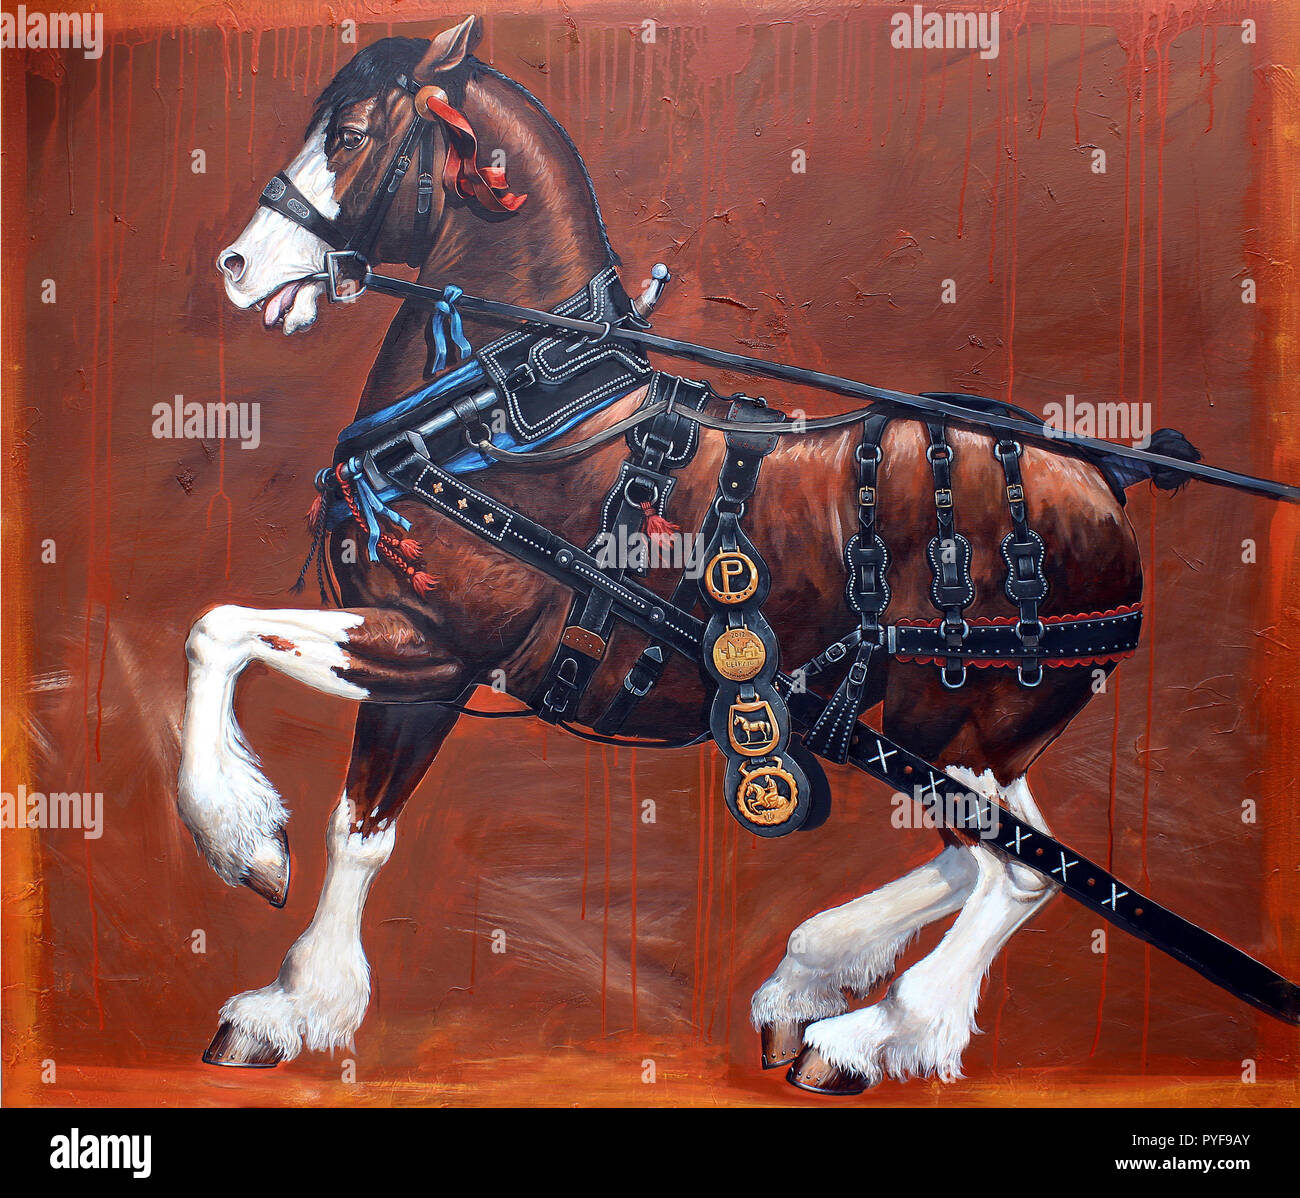 Illustration de cheval. Ébauche du cheval Percheron. Portrait animal. Banque D'Images